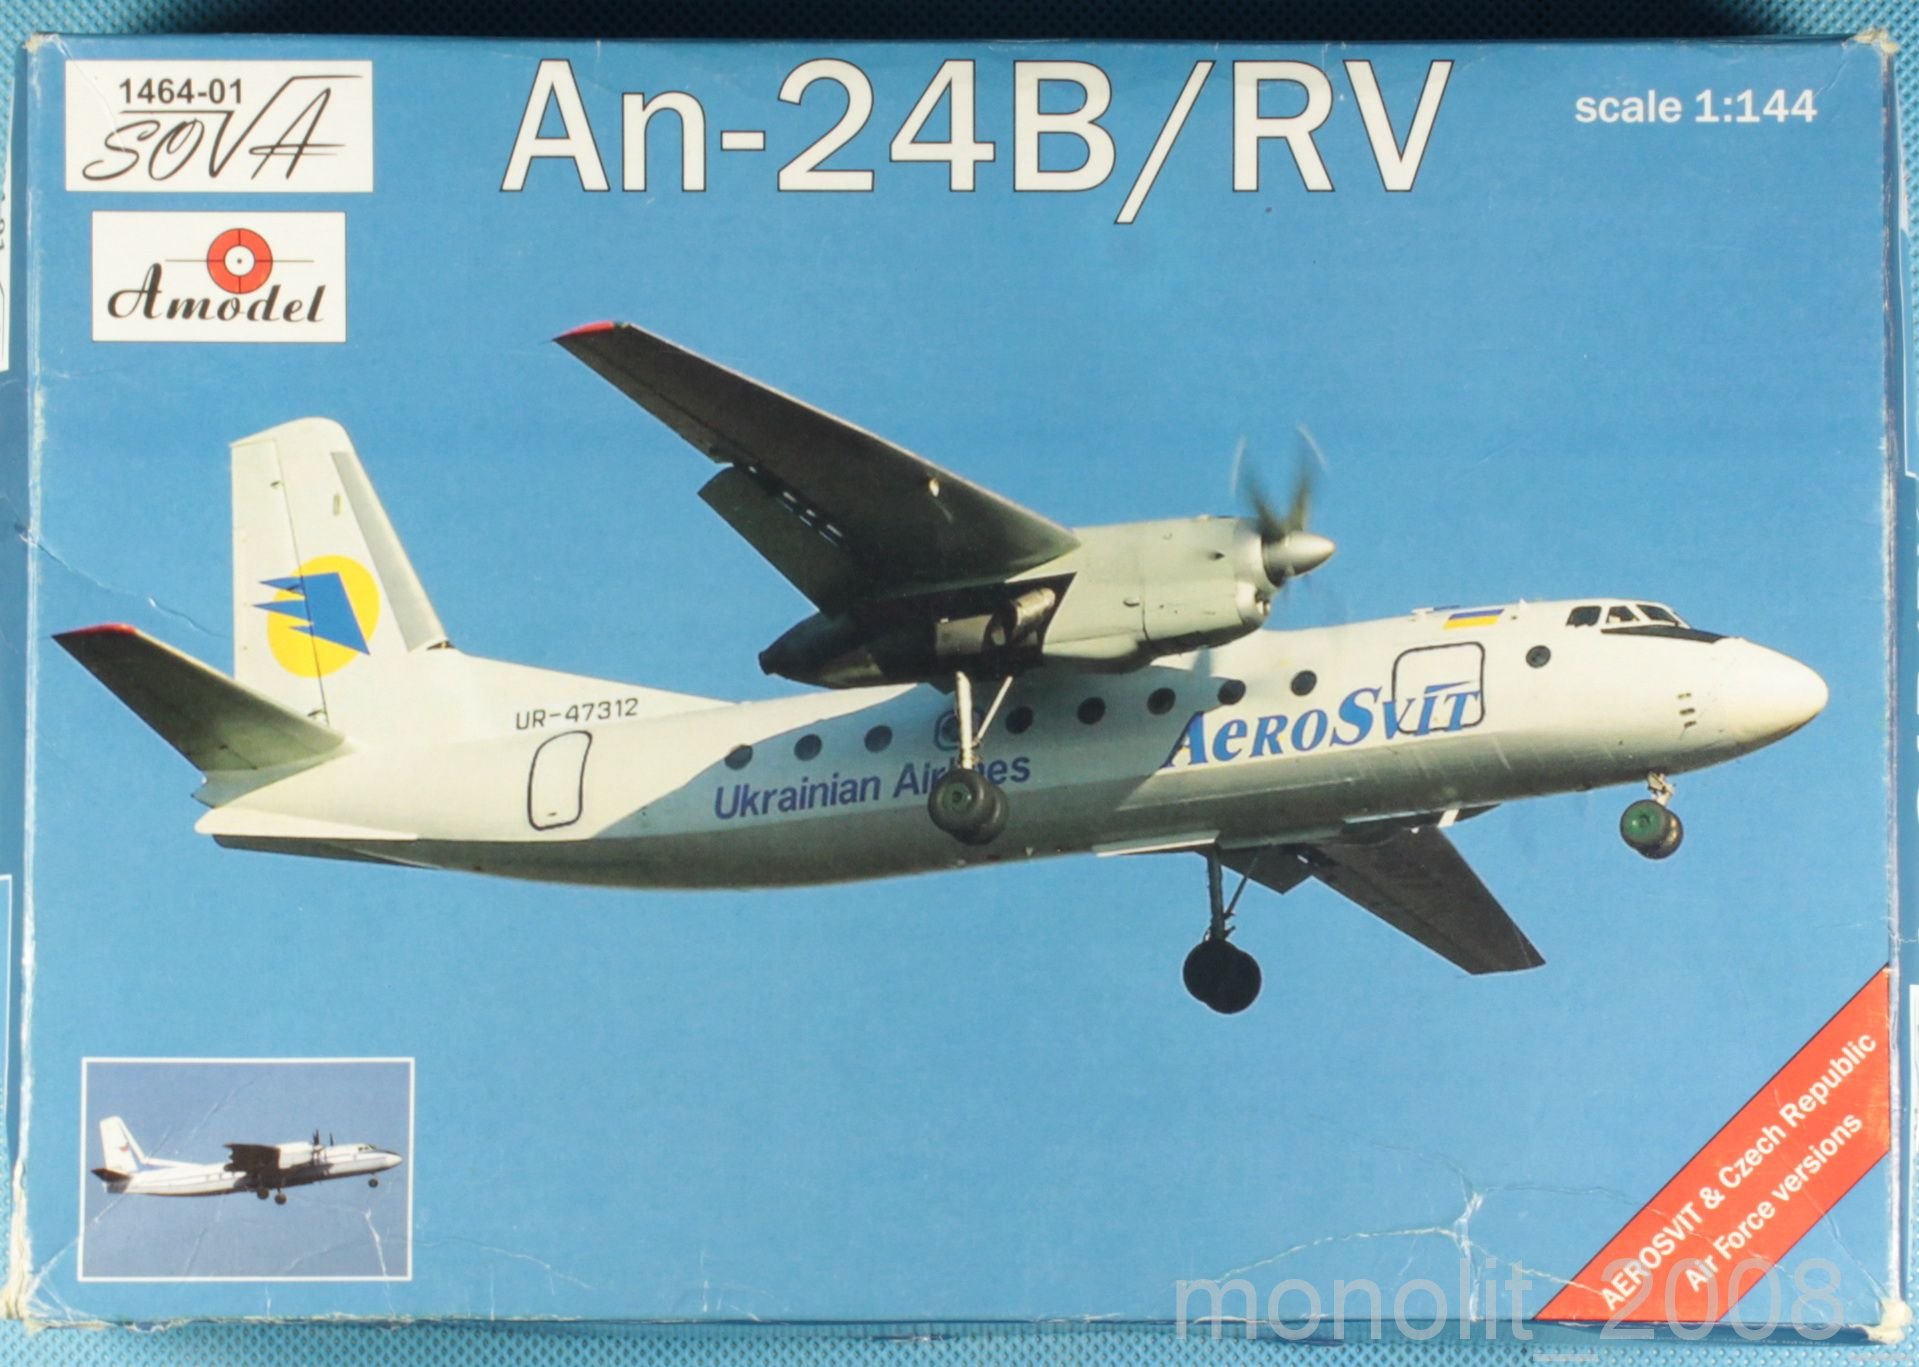 Antonov An-24B/RV AEROSVIT